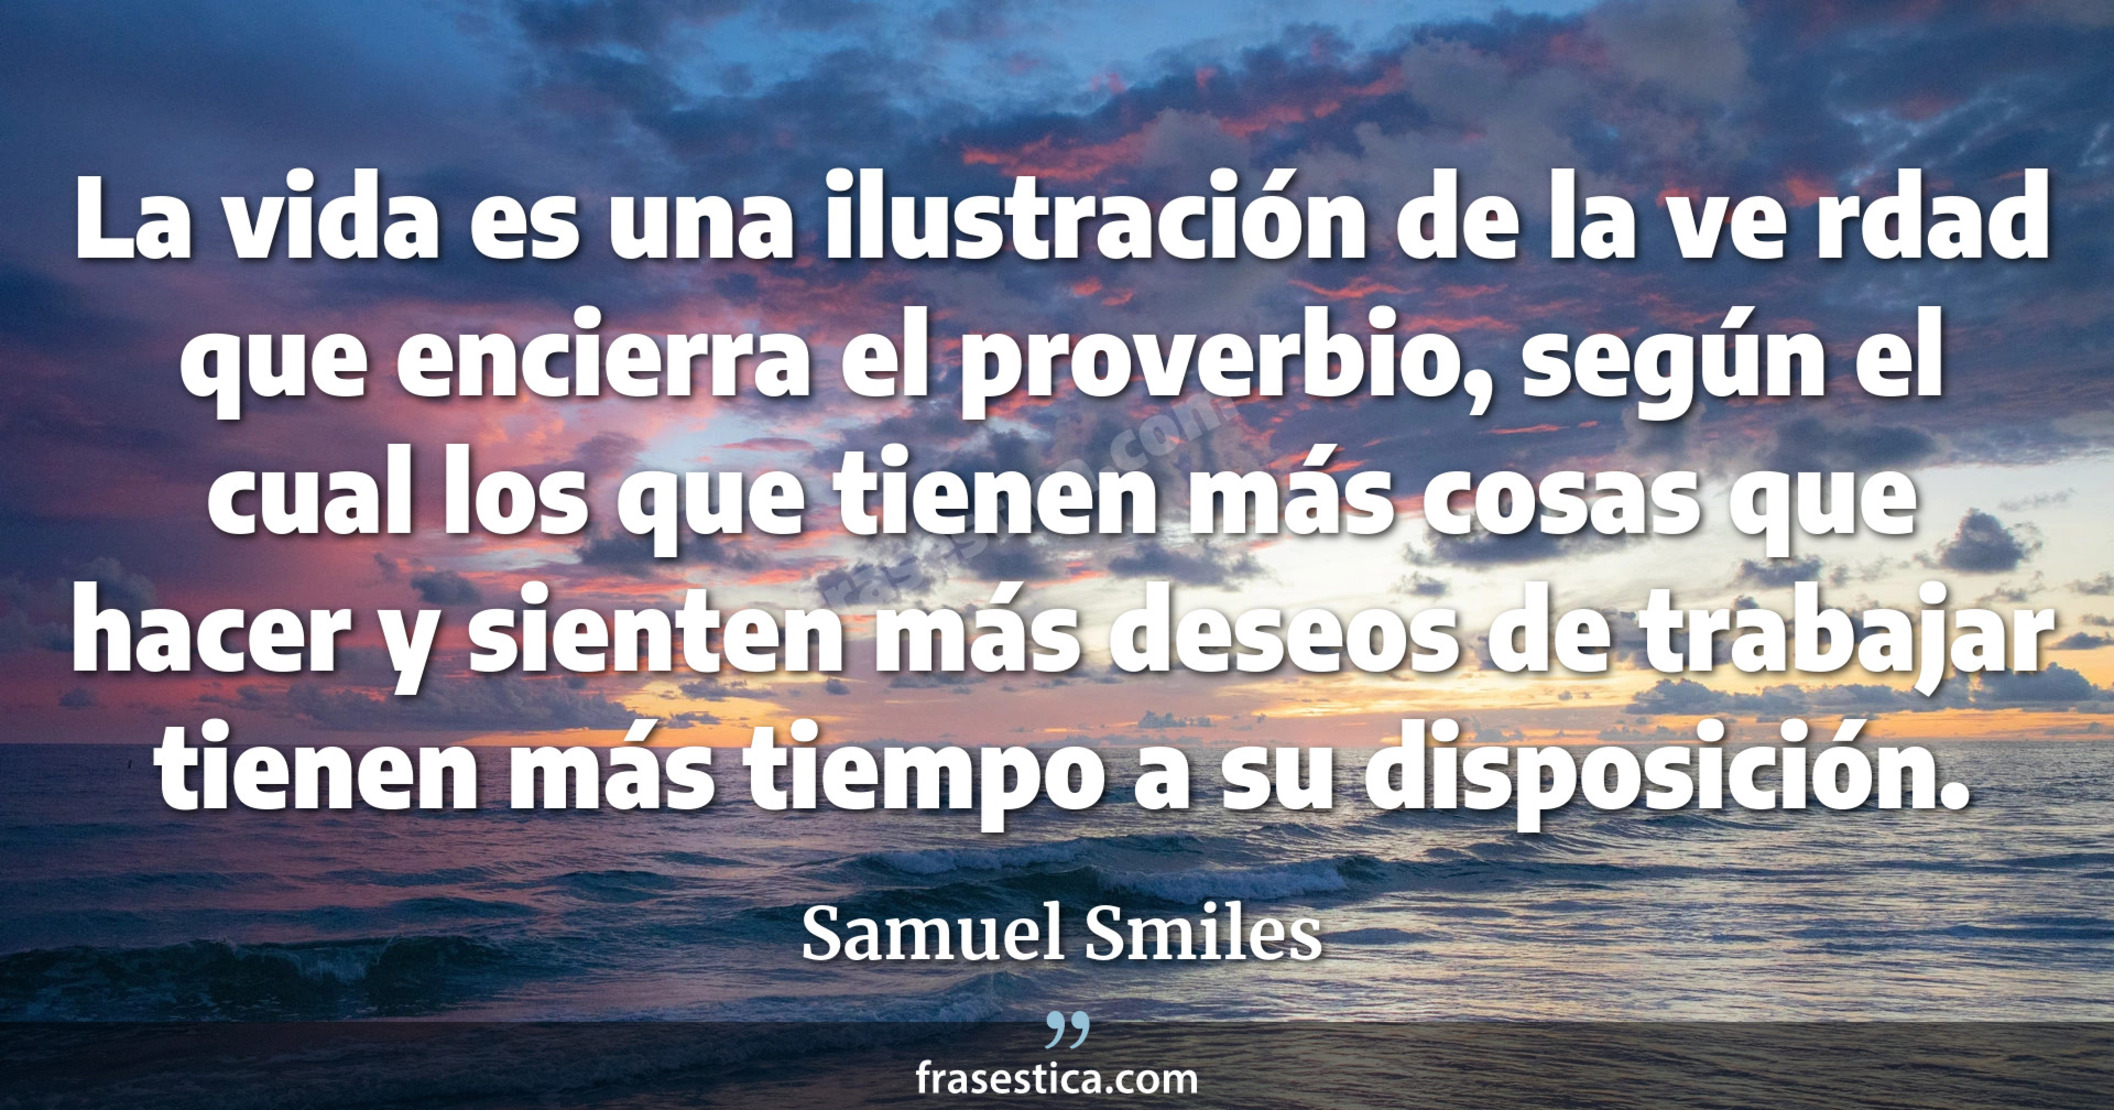 La vida es una ilustración de la ve rdad que encierra el proverbio, según el cual los que tienen más cosas que hacer y sienten más deseos de trabajar tienen más tiempo a su disposición. - Samuel Smiles